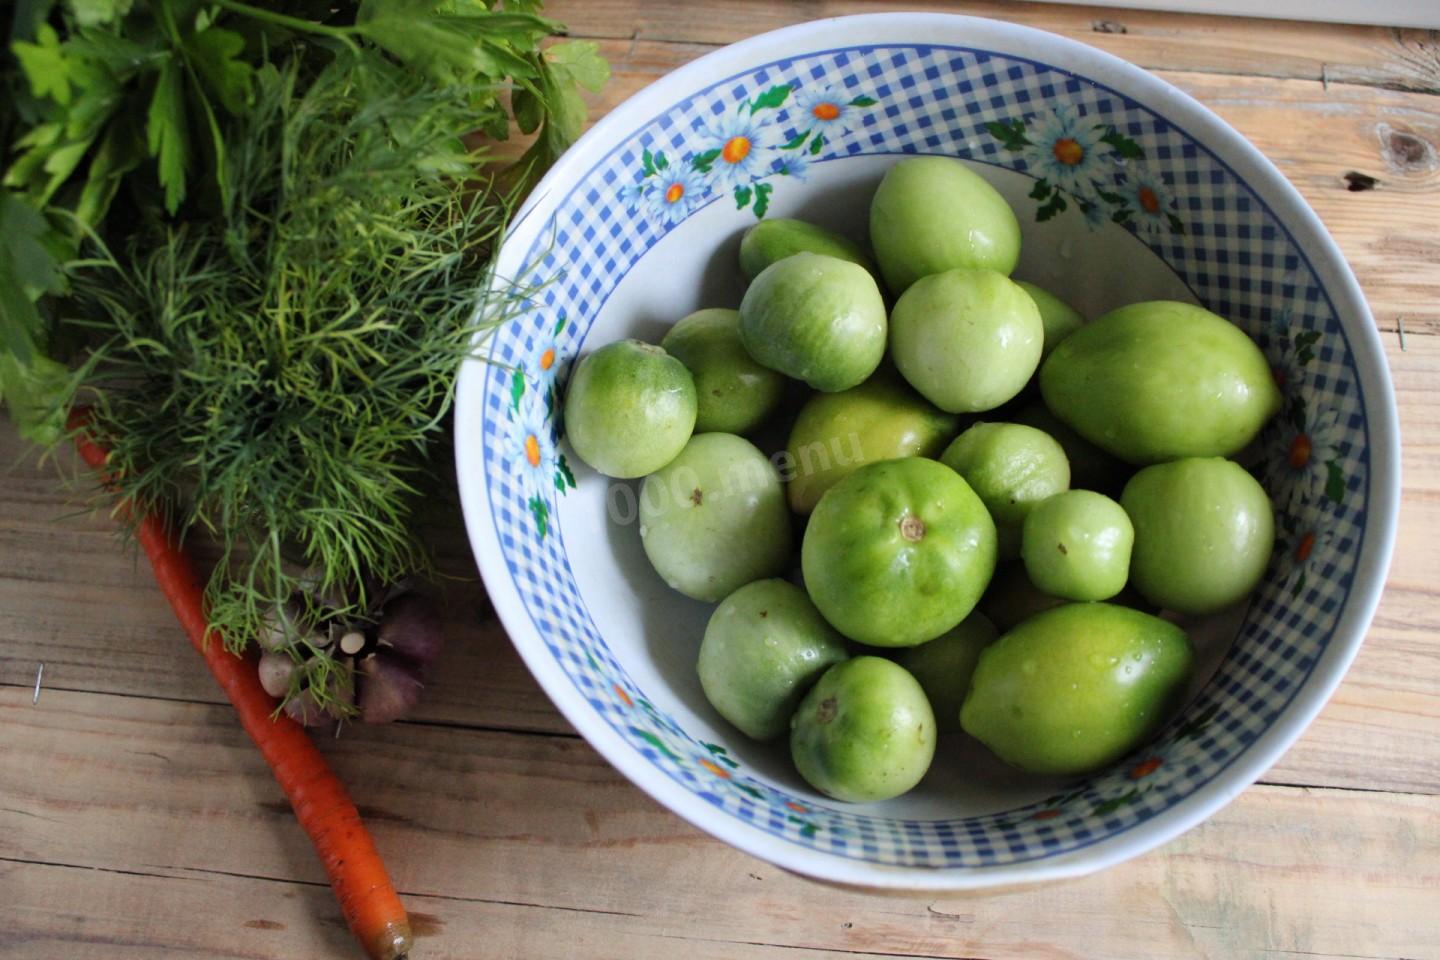 Рецепт вкусных простых зеленых помидор